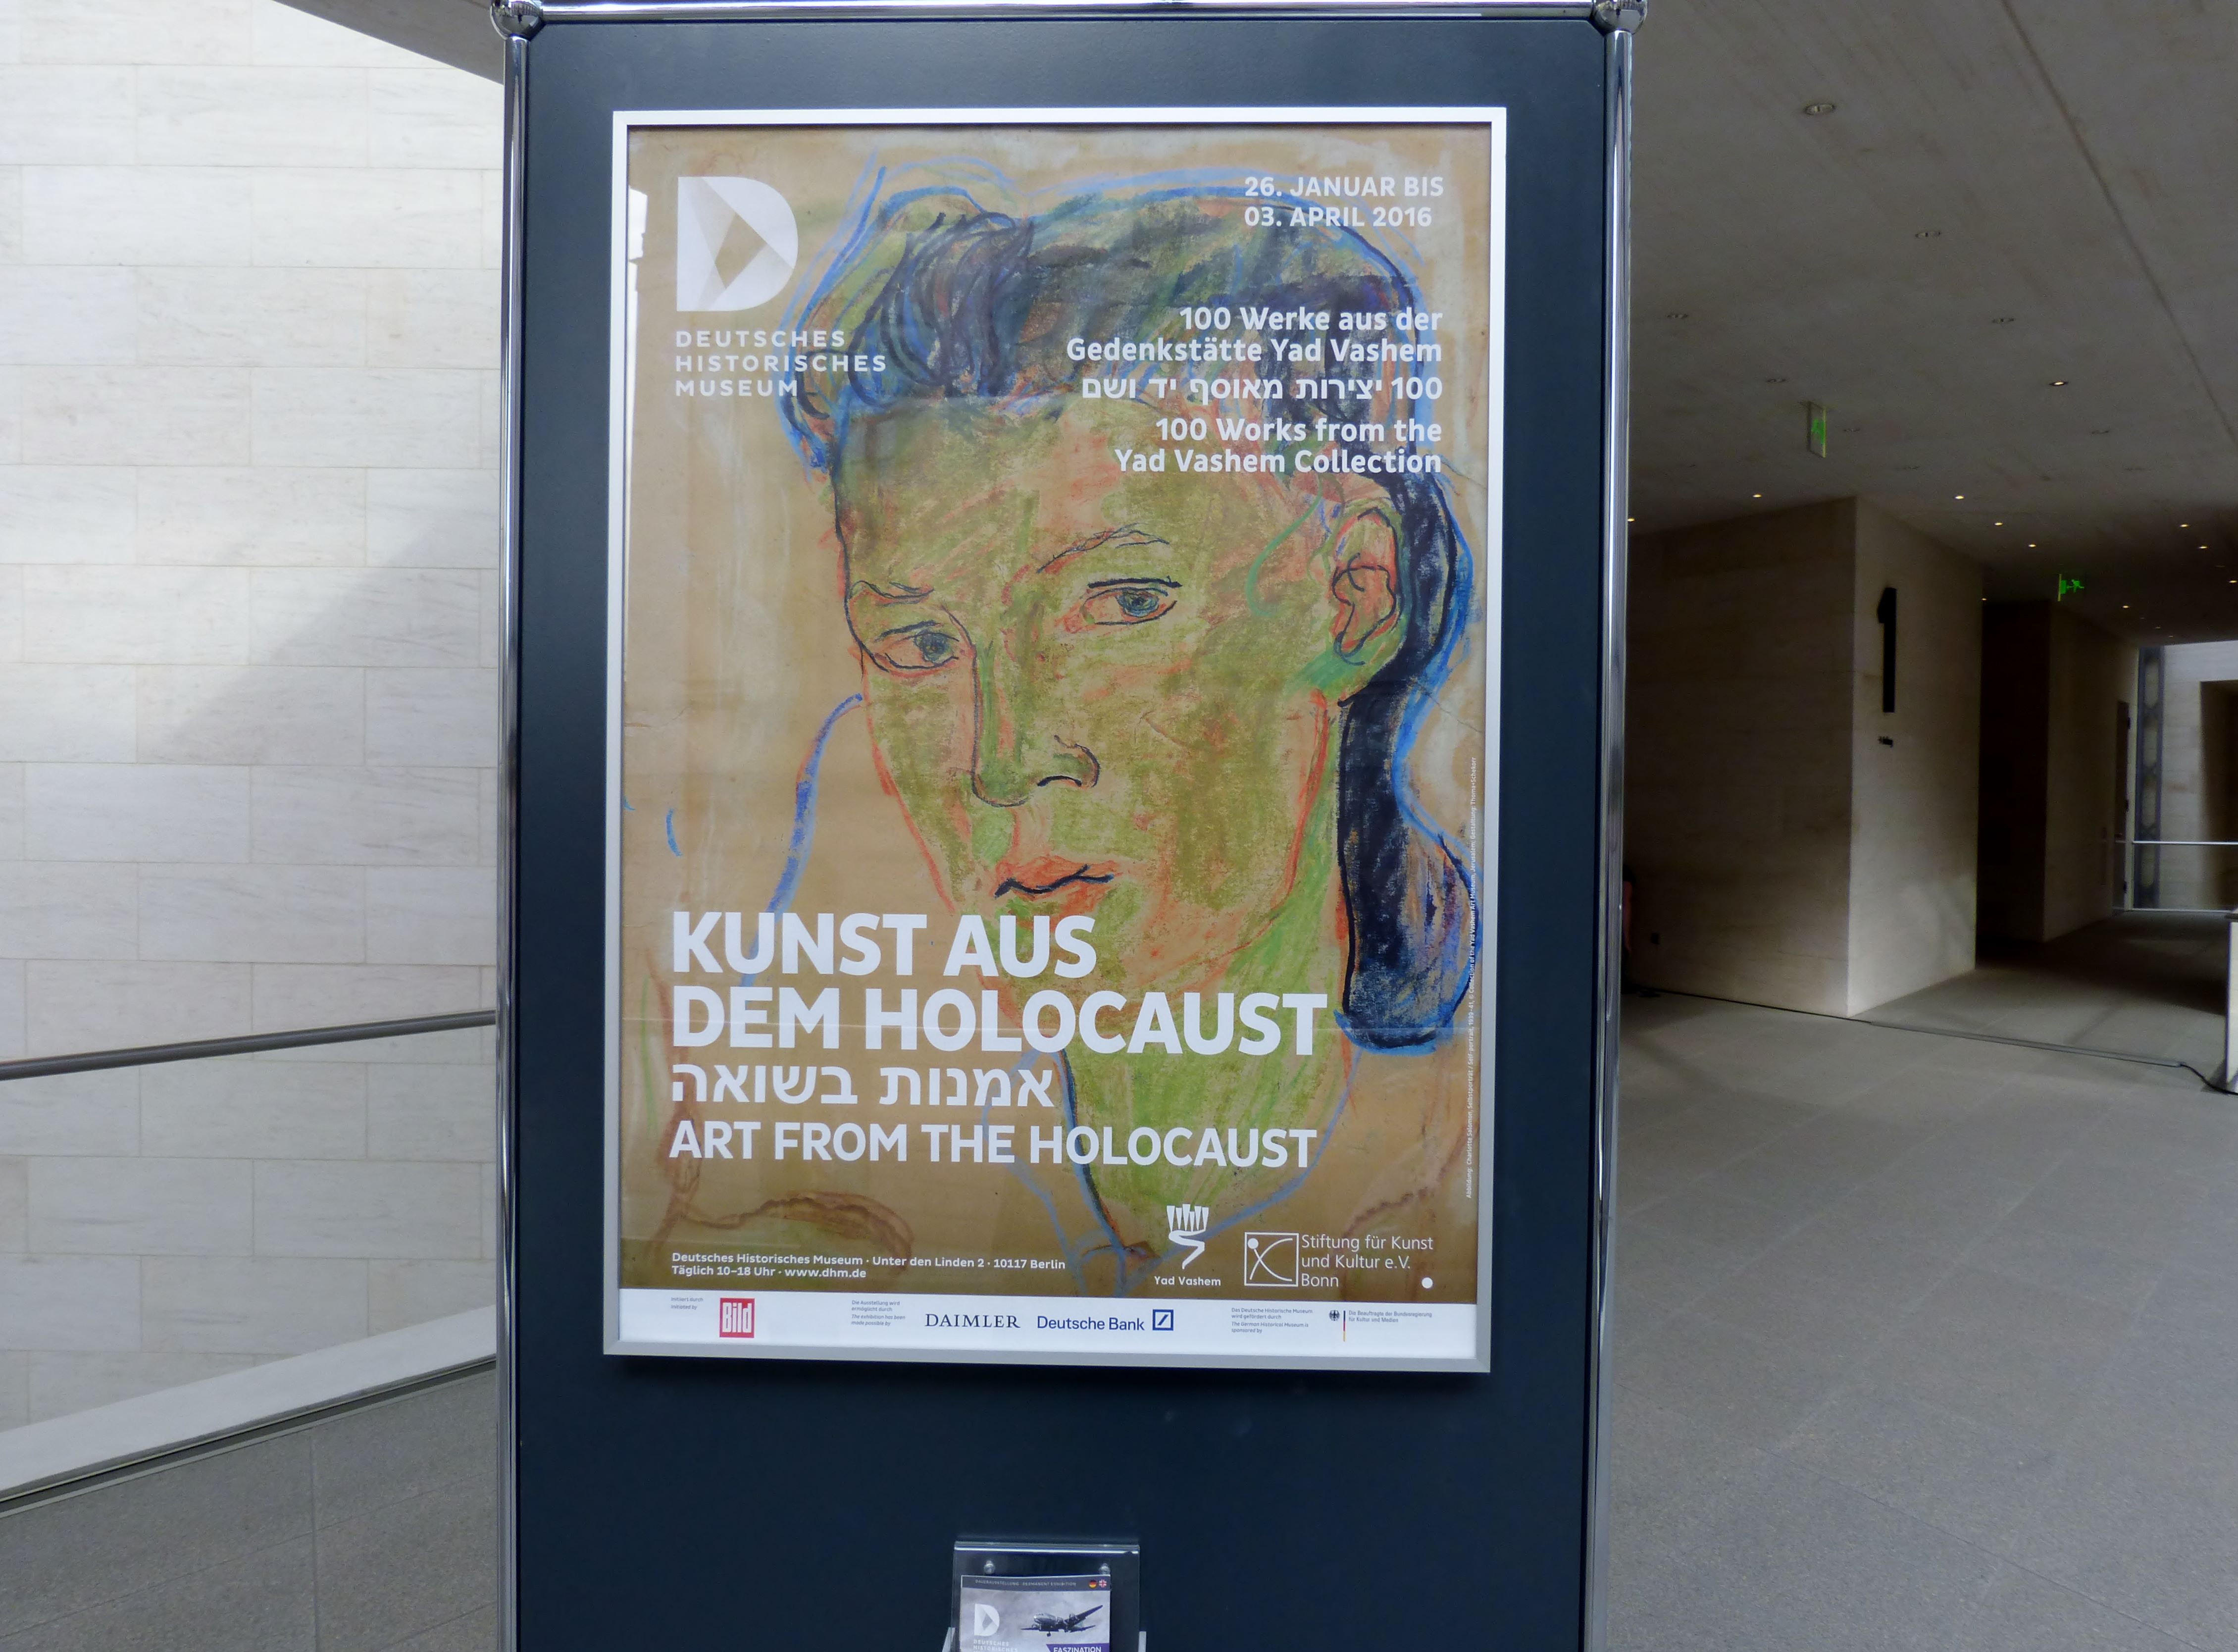 »Kunst aus dem Holocaust«: Der menschliche Geist kann nicht bezwungen werden